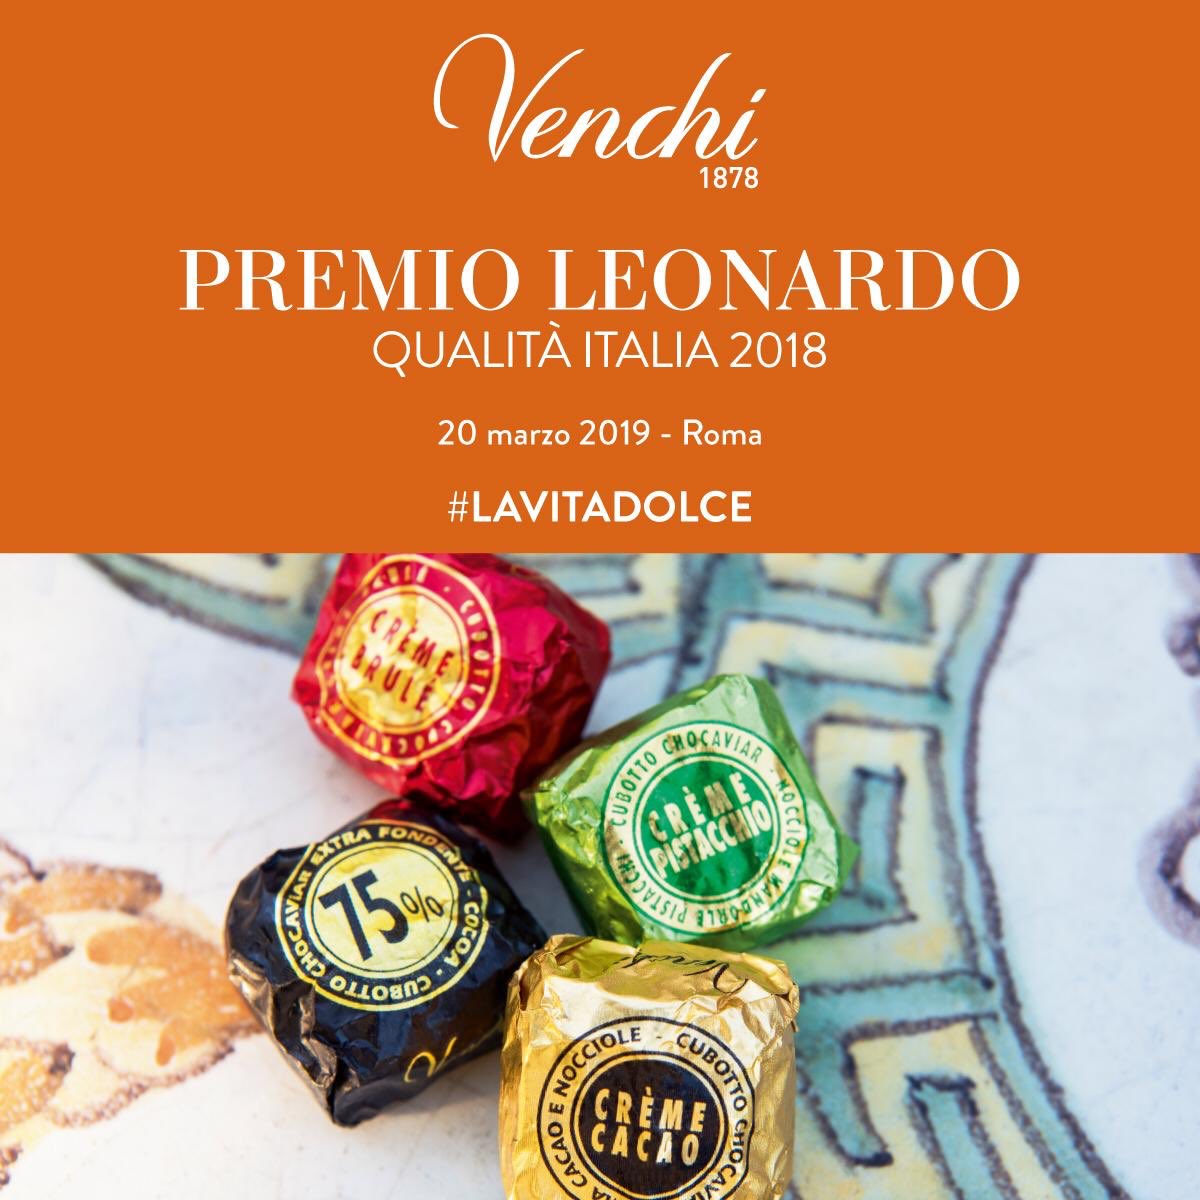 Siamo orgogliosi di comunicare di aver ricevuto il Premio Leonardo Qualità Italia 2018: riconoscimento conferito ogni anno dal Capo di Stato alle aziende più rappresentative del Made in Italy nel mondo Il nostro ringraziamento a tutti voi che ci aiutate a diffondere #LAVITADOLCE